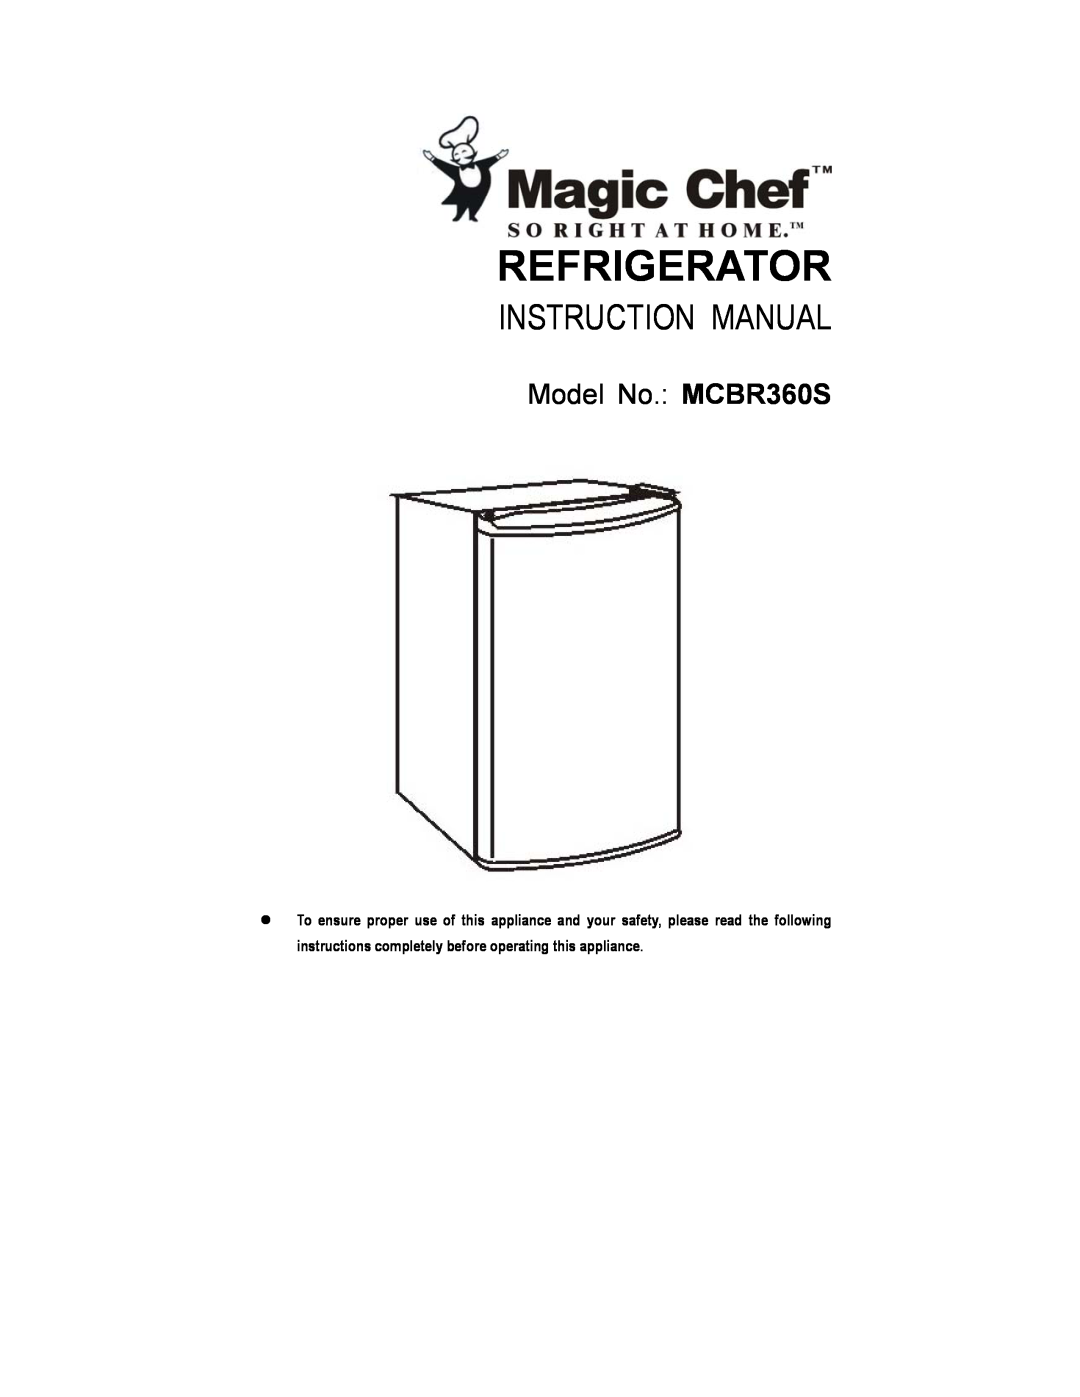 Magic Chef instruction manual Refrigerator, Model No. MCBR360S 